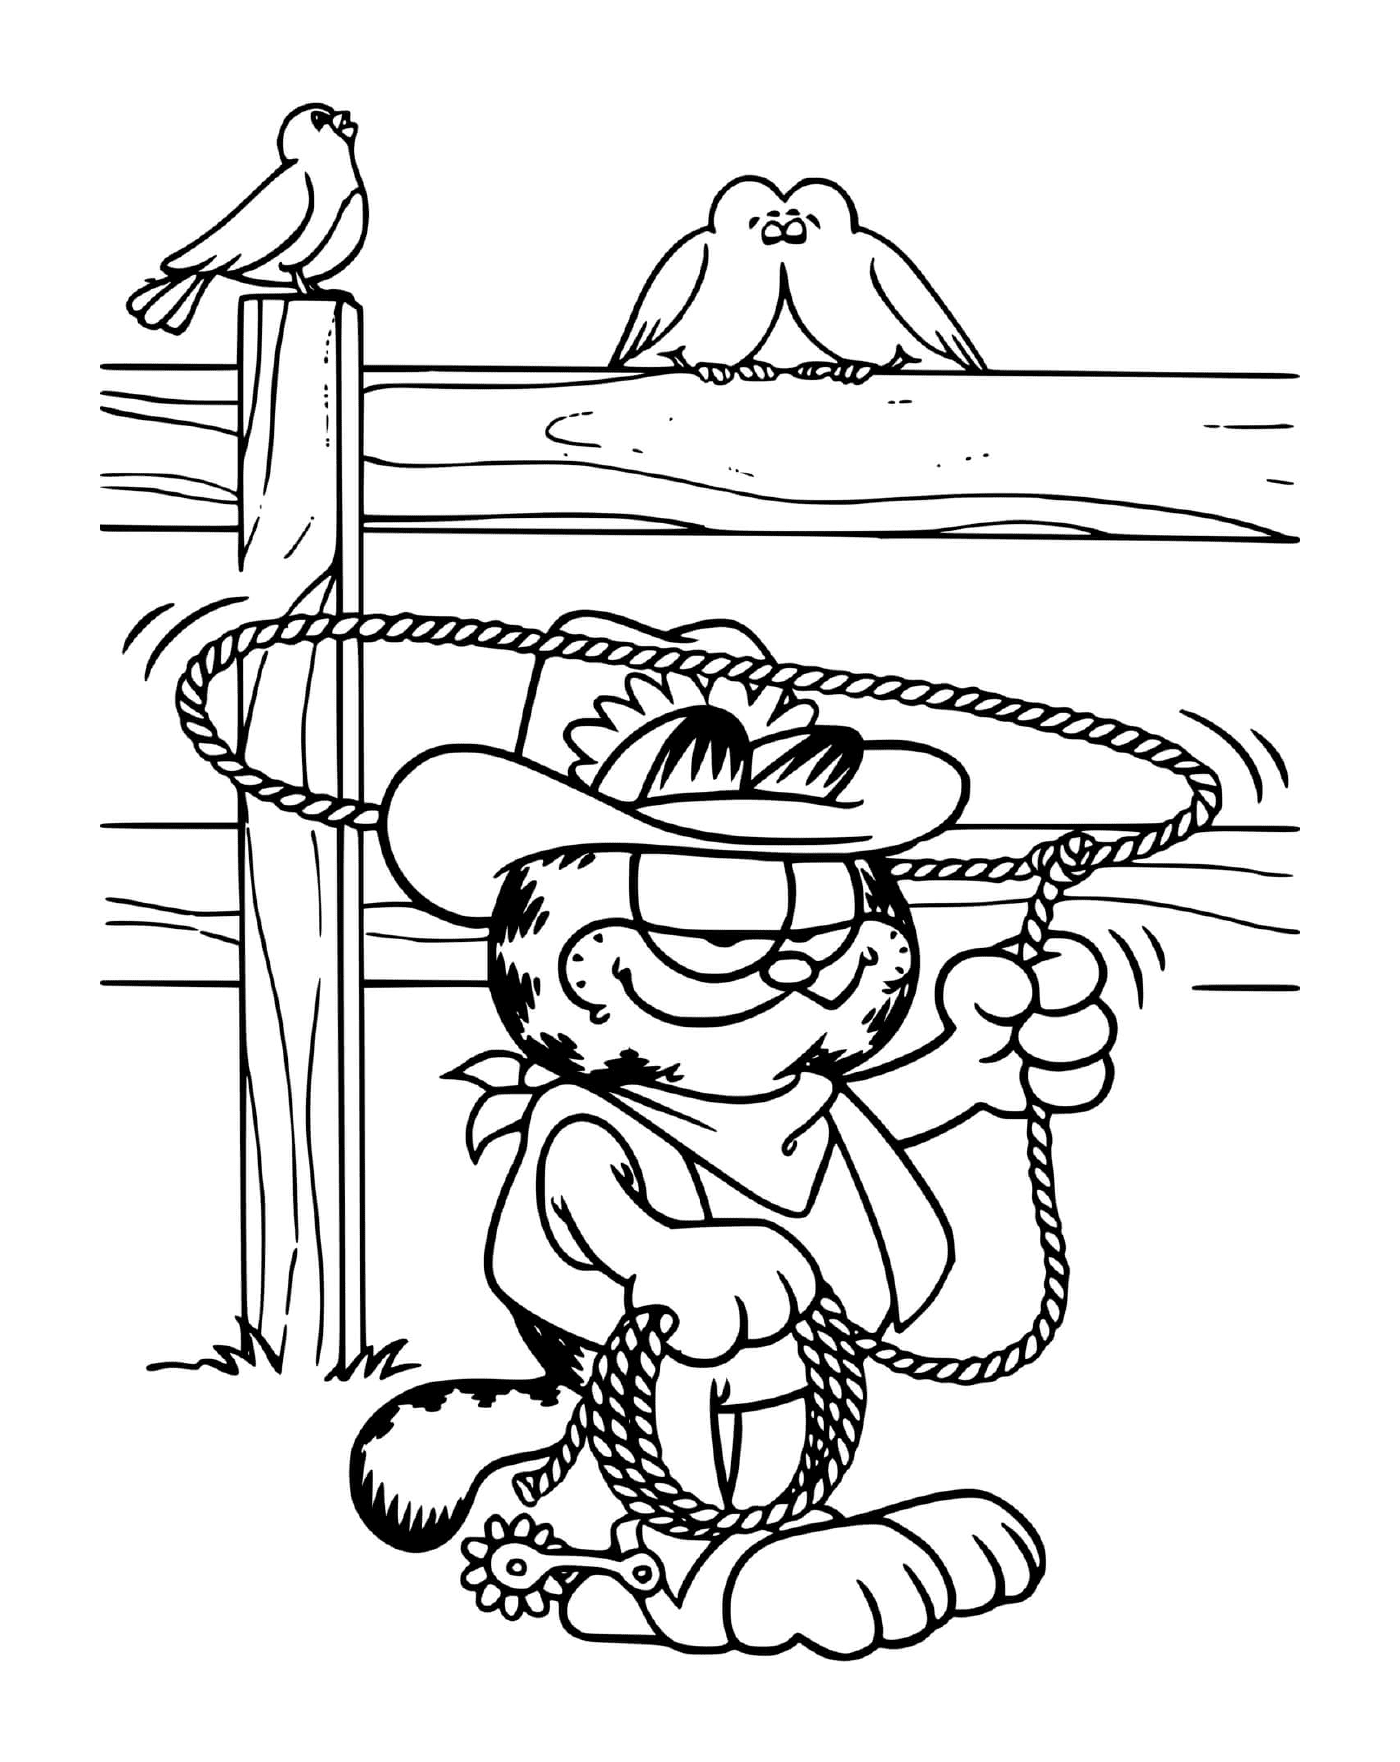  Garfield im Cowboy mit seinem Lasso 